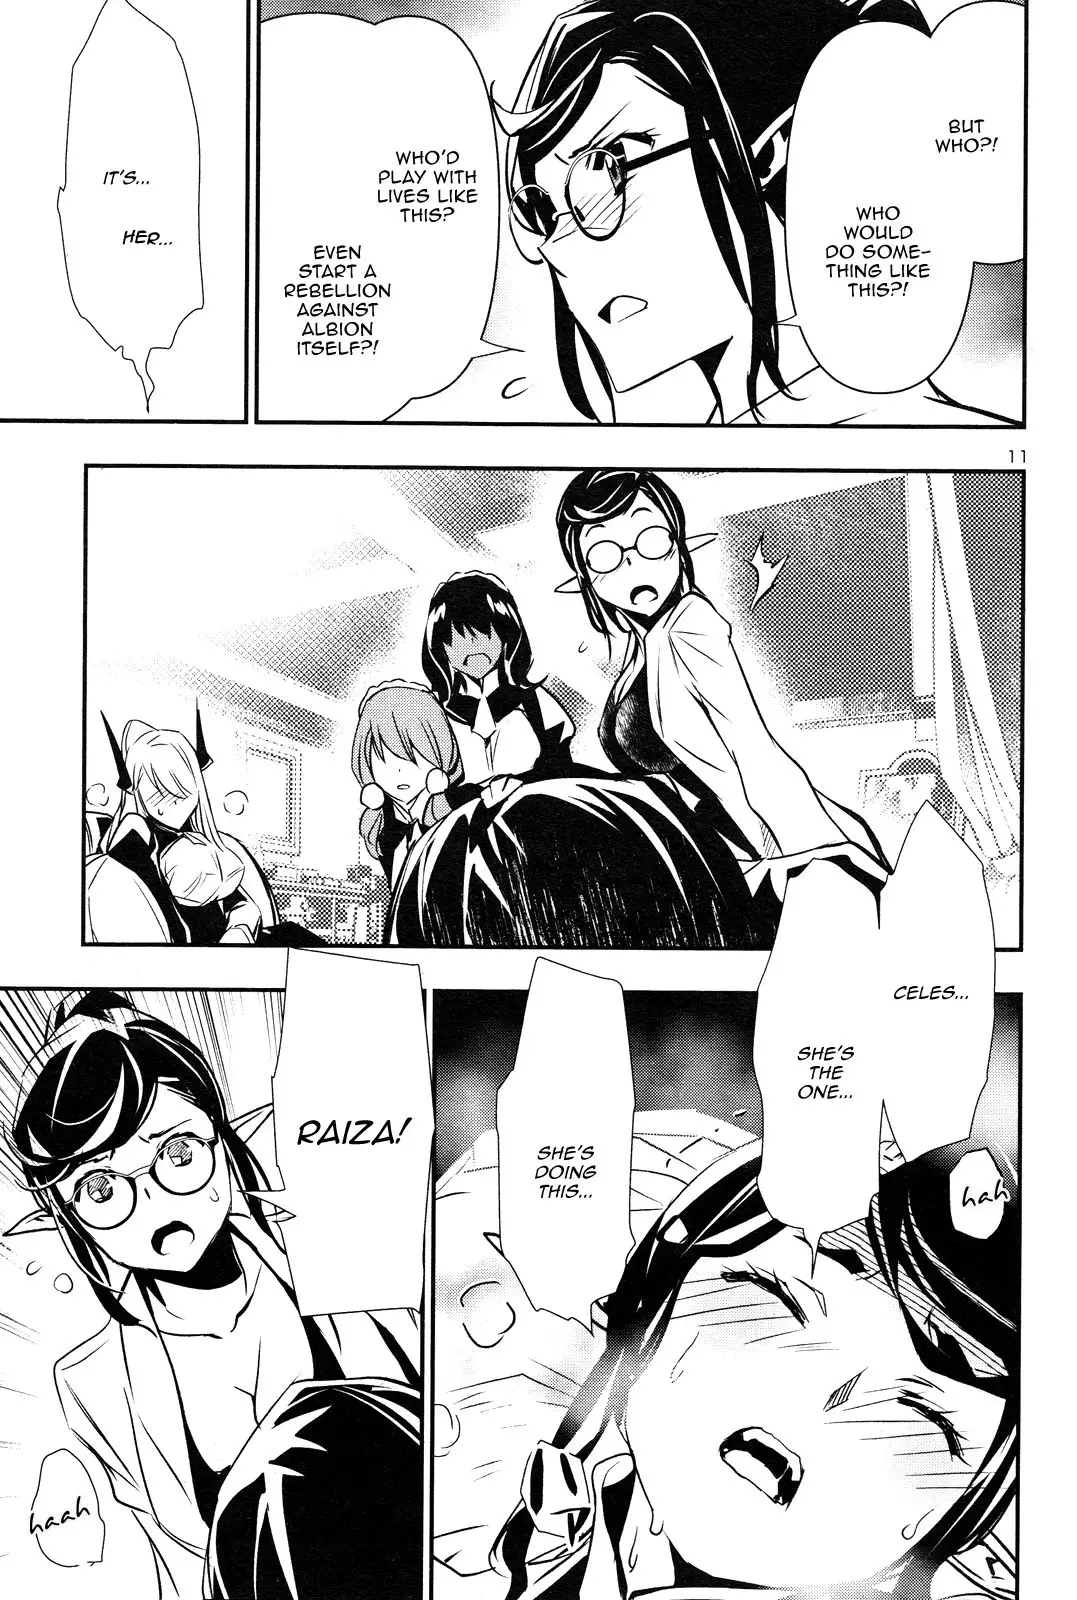 Shinju no Nectar - 42 page 11